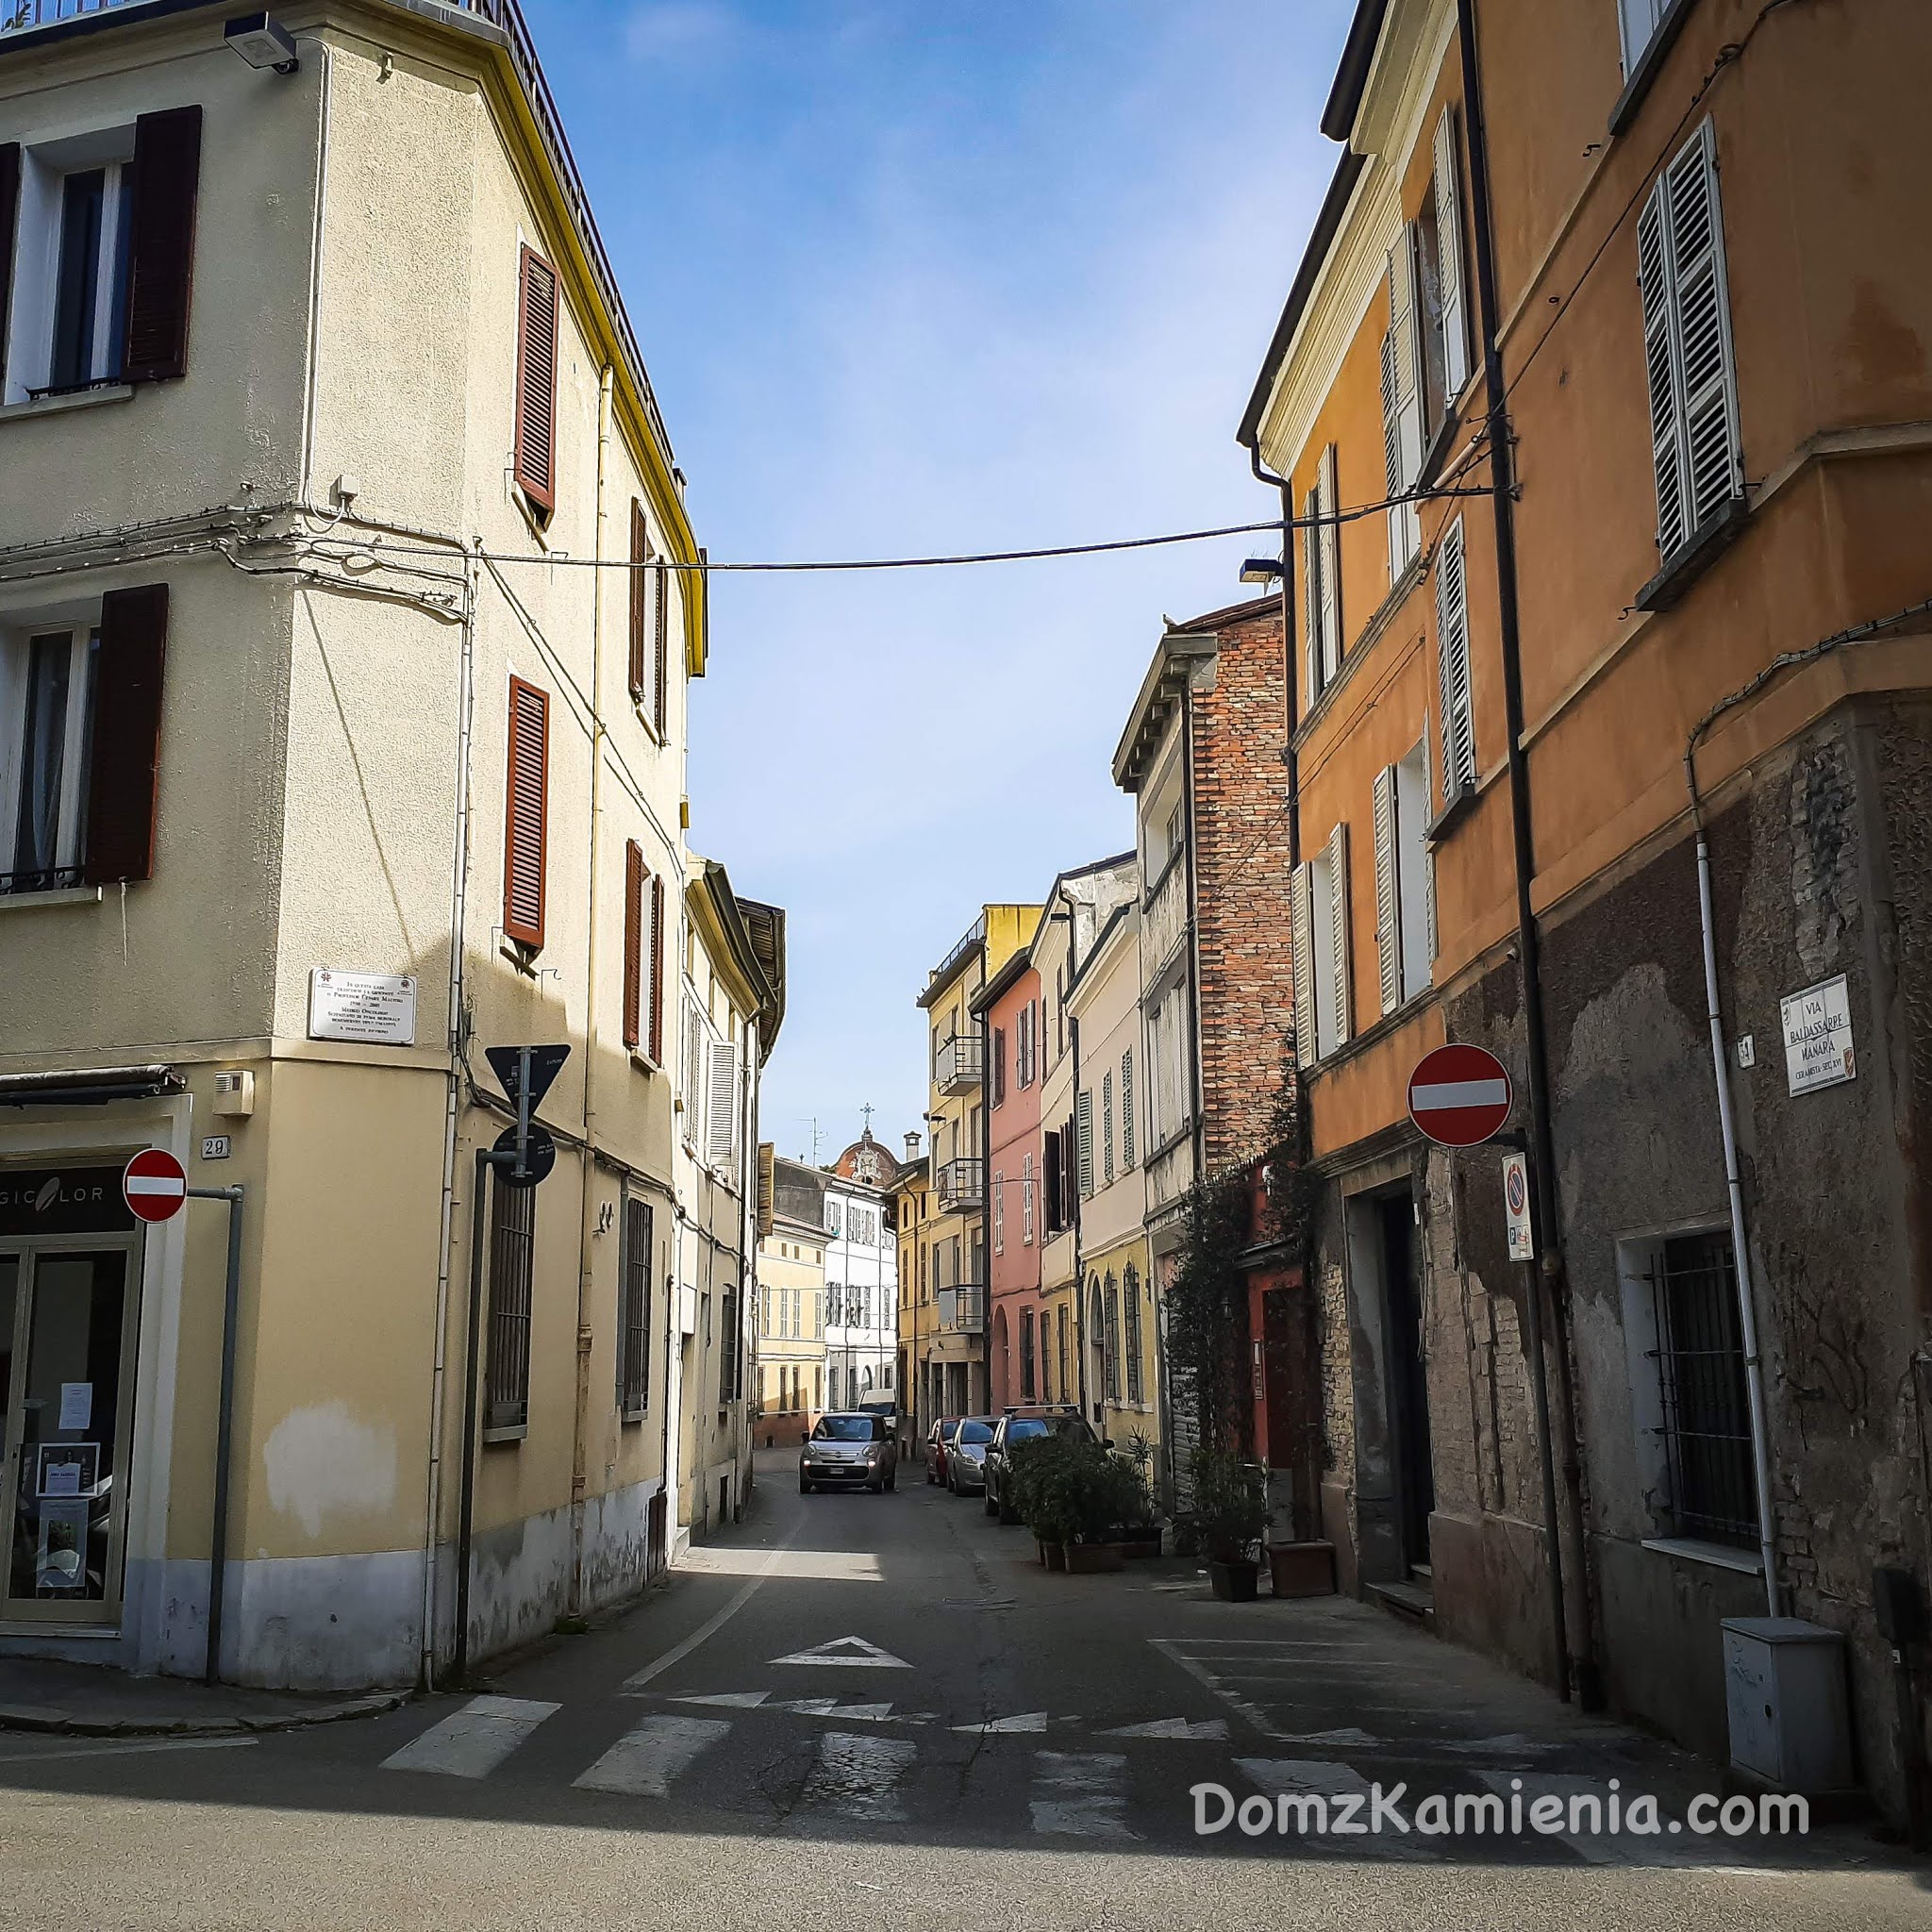 Faenza, Dom z Kamienia blog o życiu we Włoszech